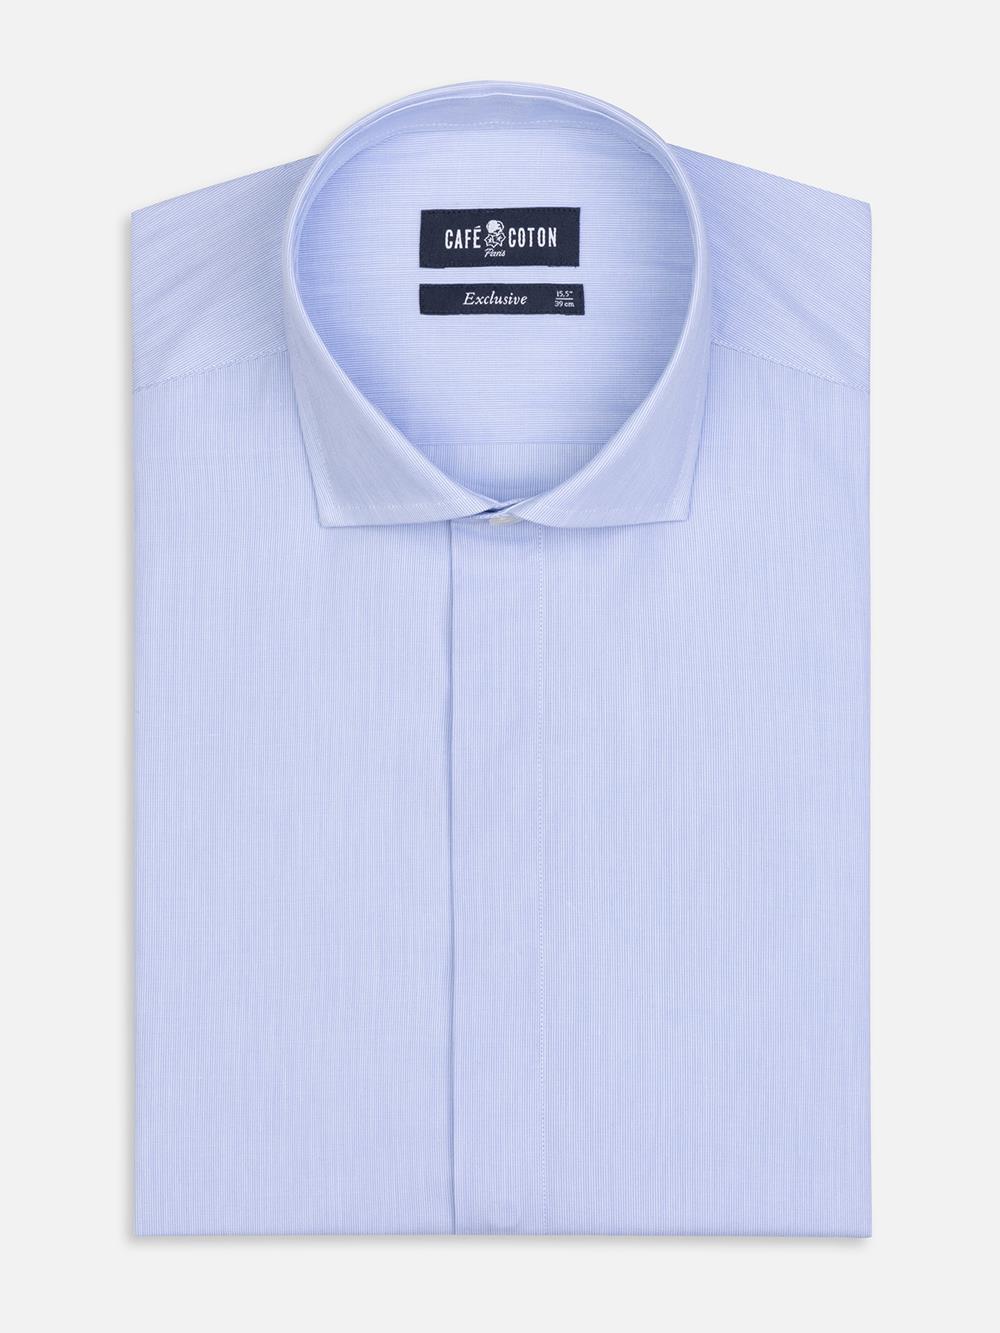 Tailliertes Hemd mit tausend Streifen himmelblau - Verdeckte Knopfleiste